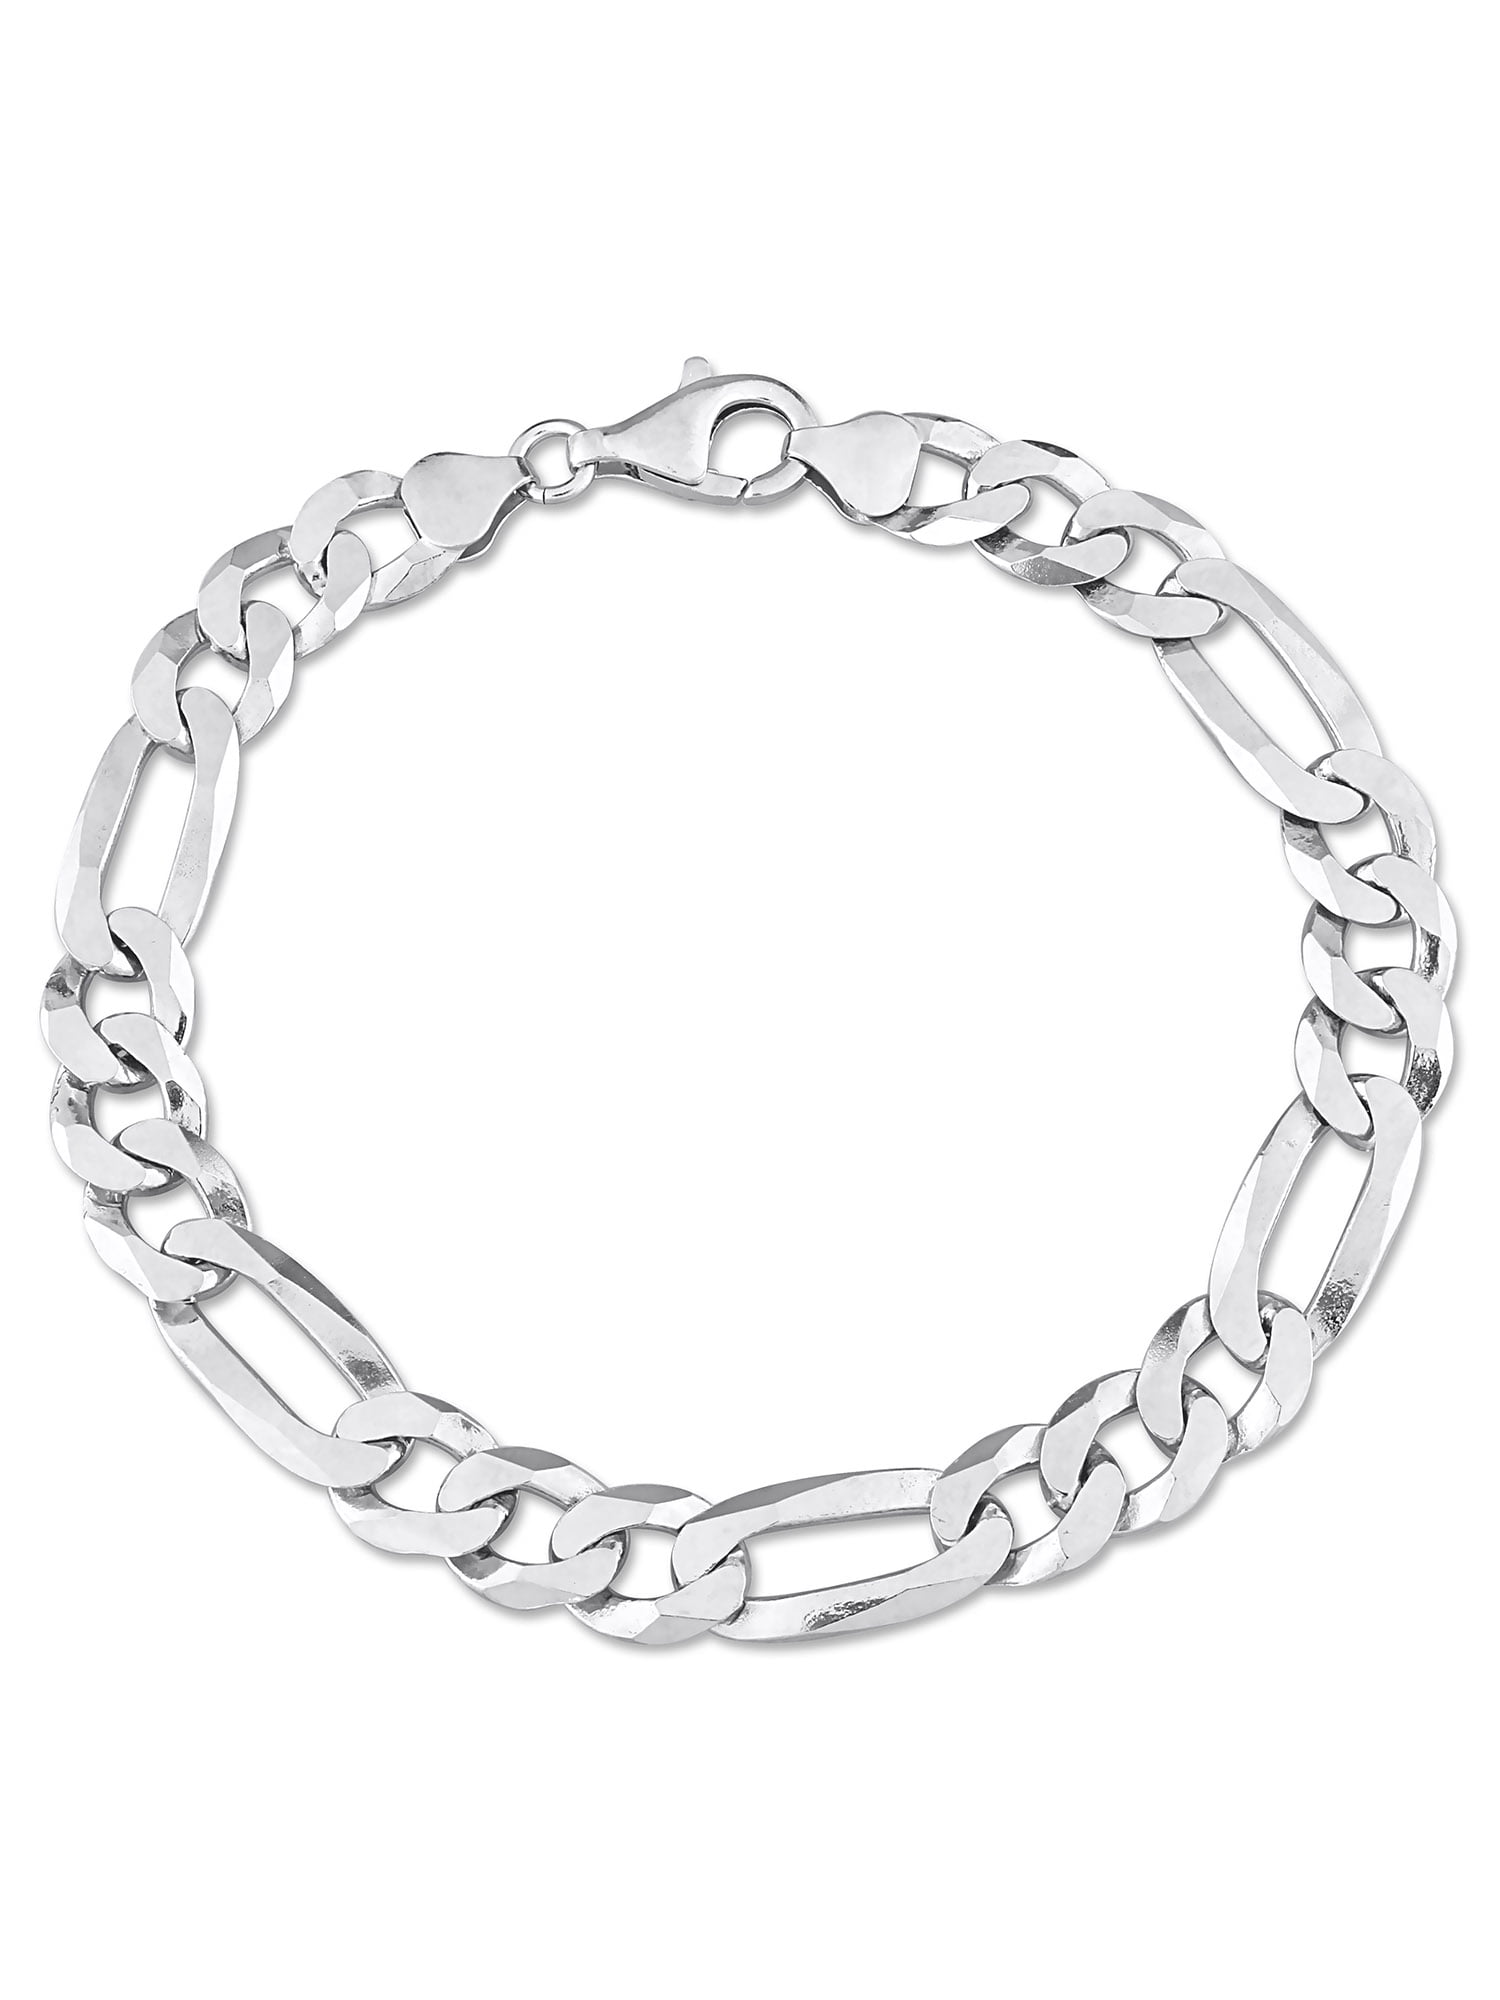 Female Men's Silver Bracelets in Men's Bracelets - Walmart.com